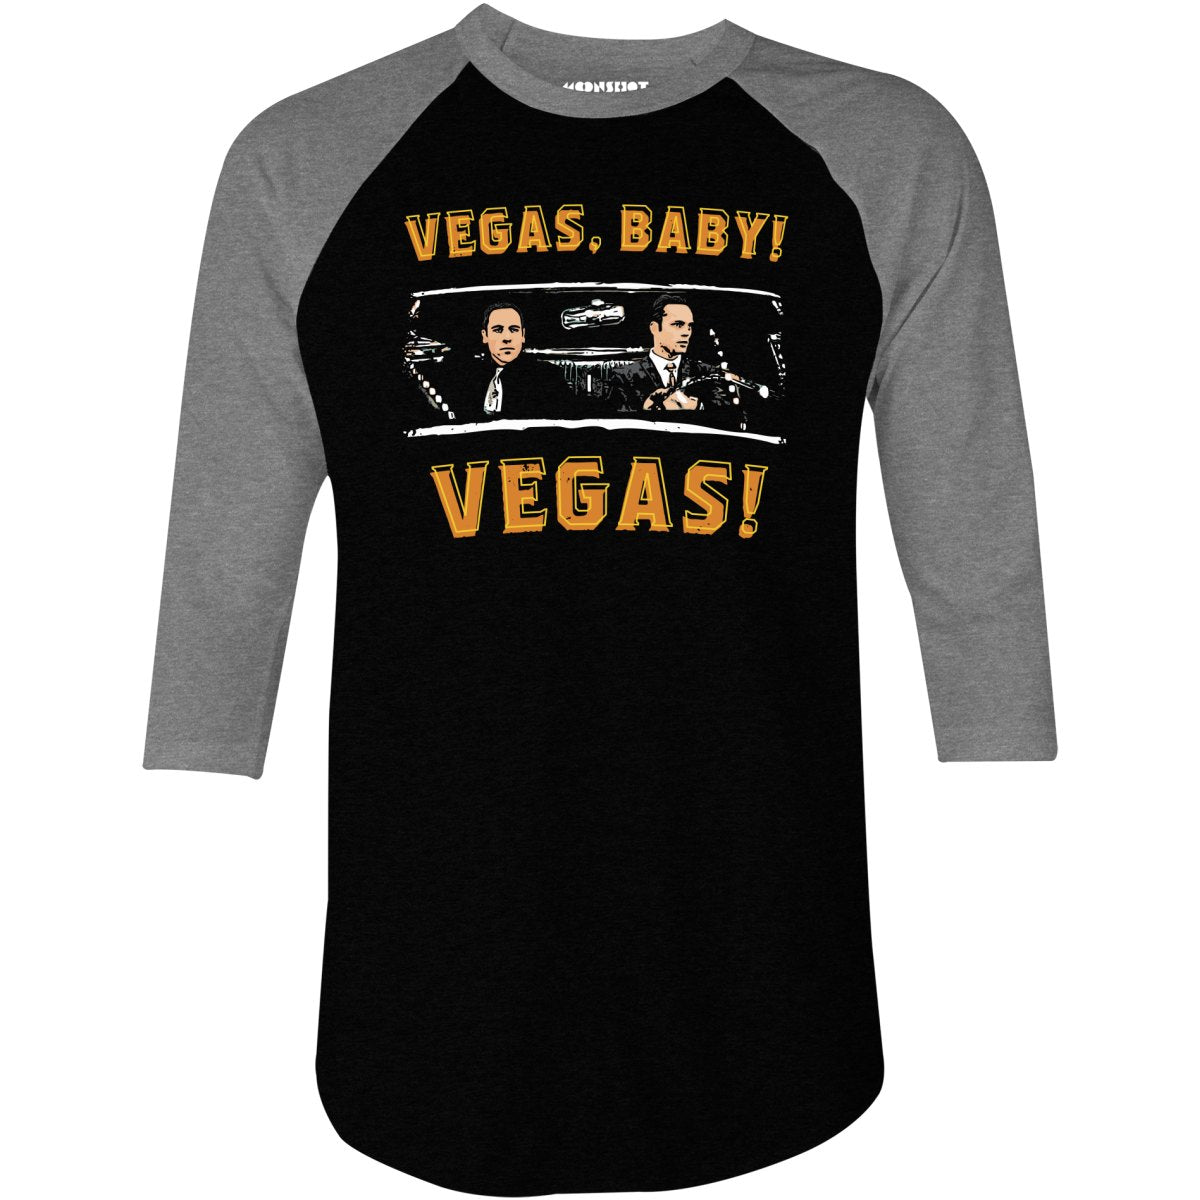 Vegas, Baby! Vegas! - 3/4 Sleeve Raglan T-Shirt